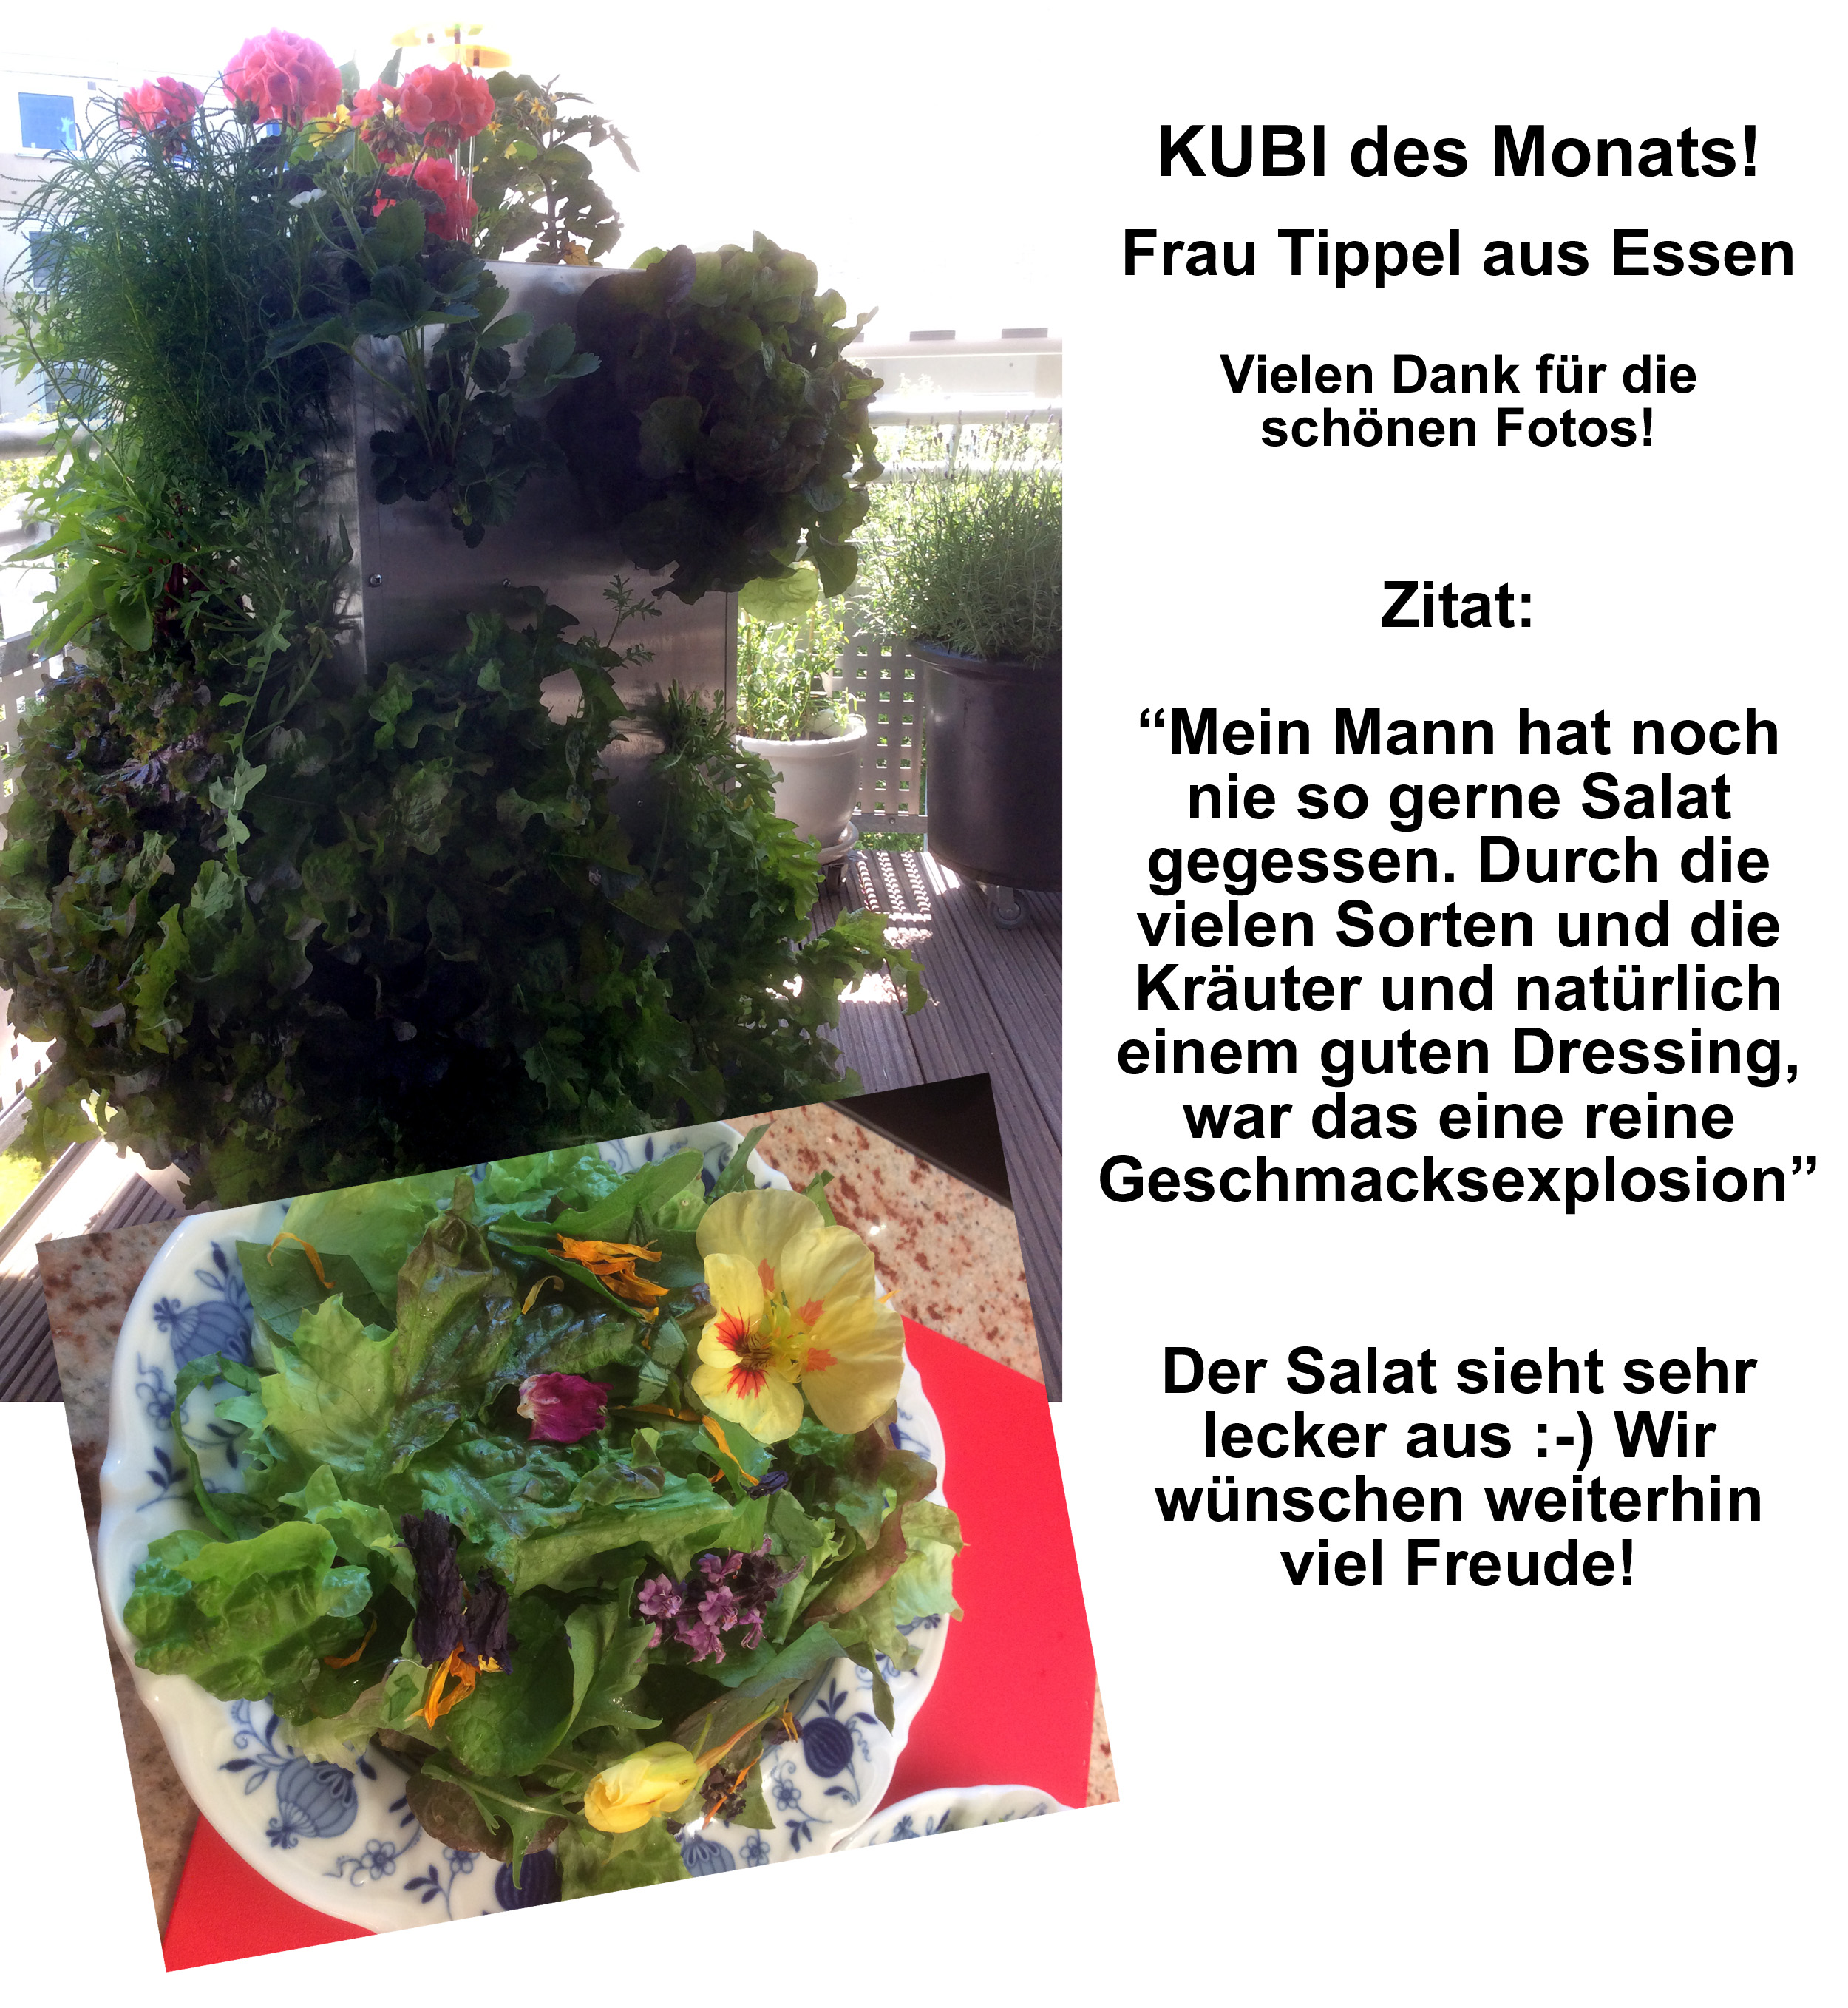 2015-08 KUBI des Monats Tippel Essen